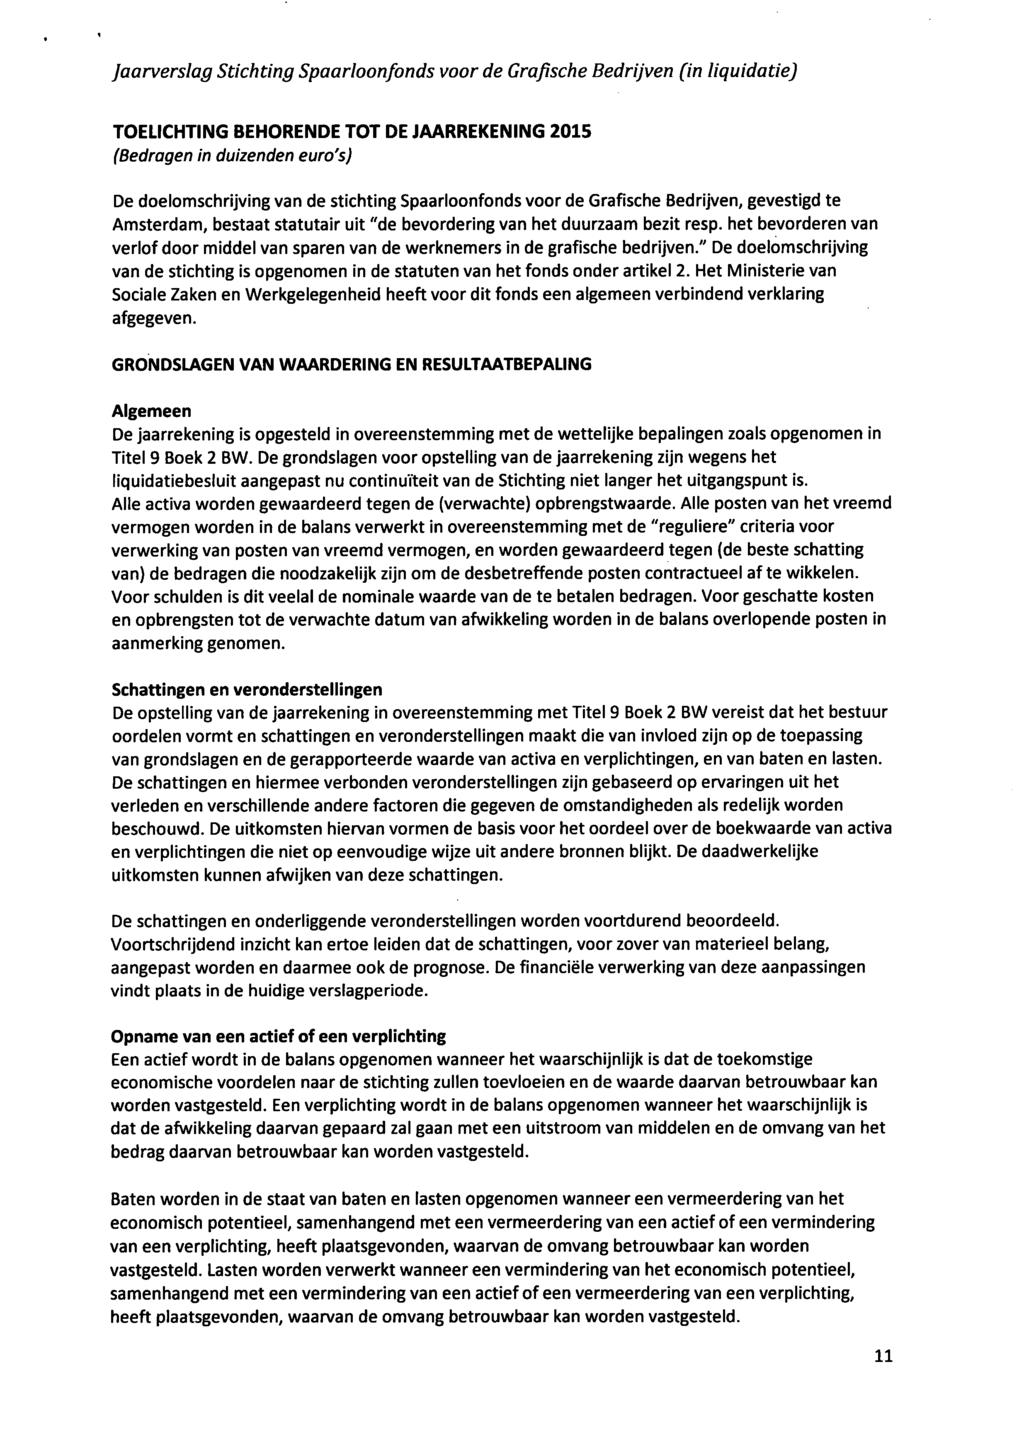 TOEUCHTING BEHORENDE TOT DE JAARREKENING 2015 (Bedragen in duizenden euro's) De doelomschrijving van de stichting Spaarloonfonds voor de Grafische Bedrijven, gevestigd te Amsterdam, bestaat statutair